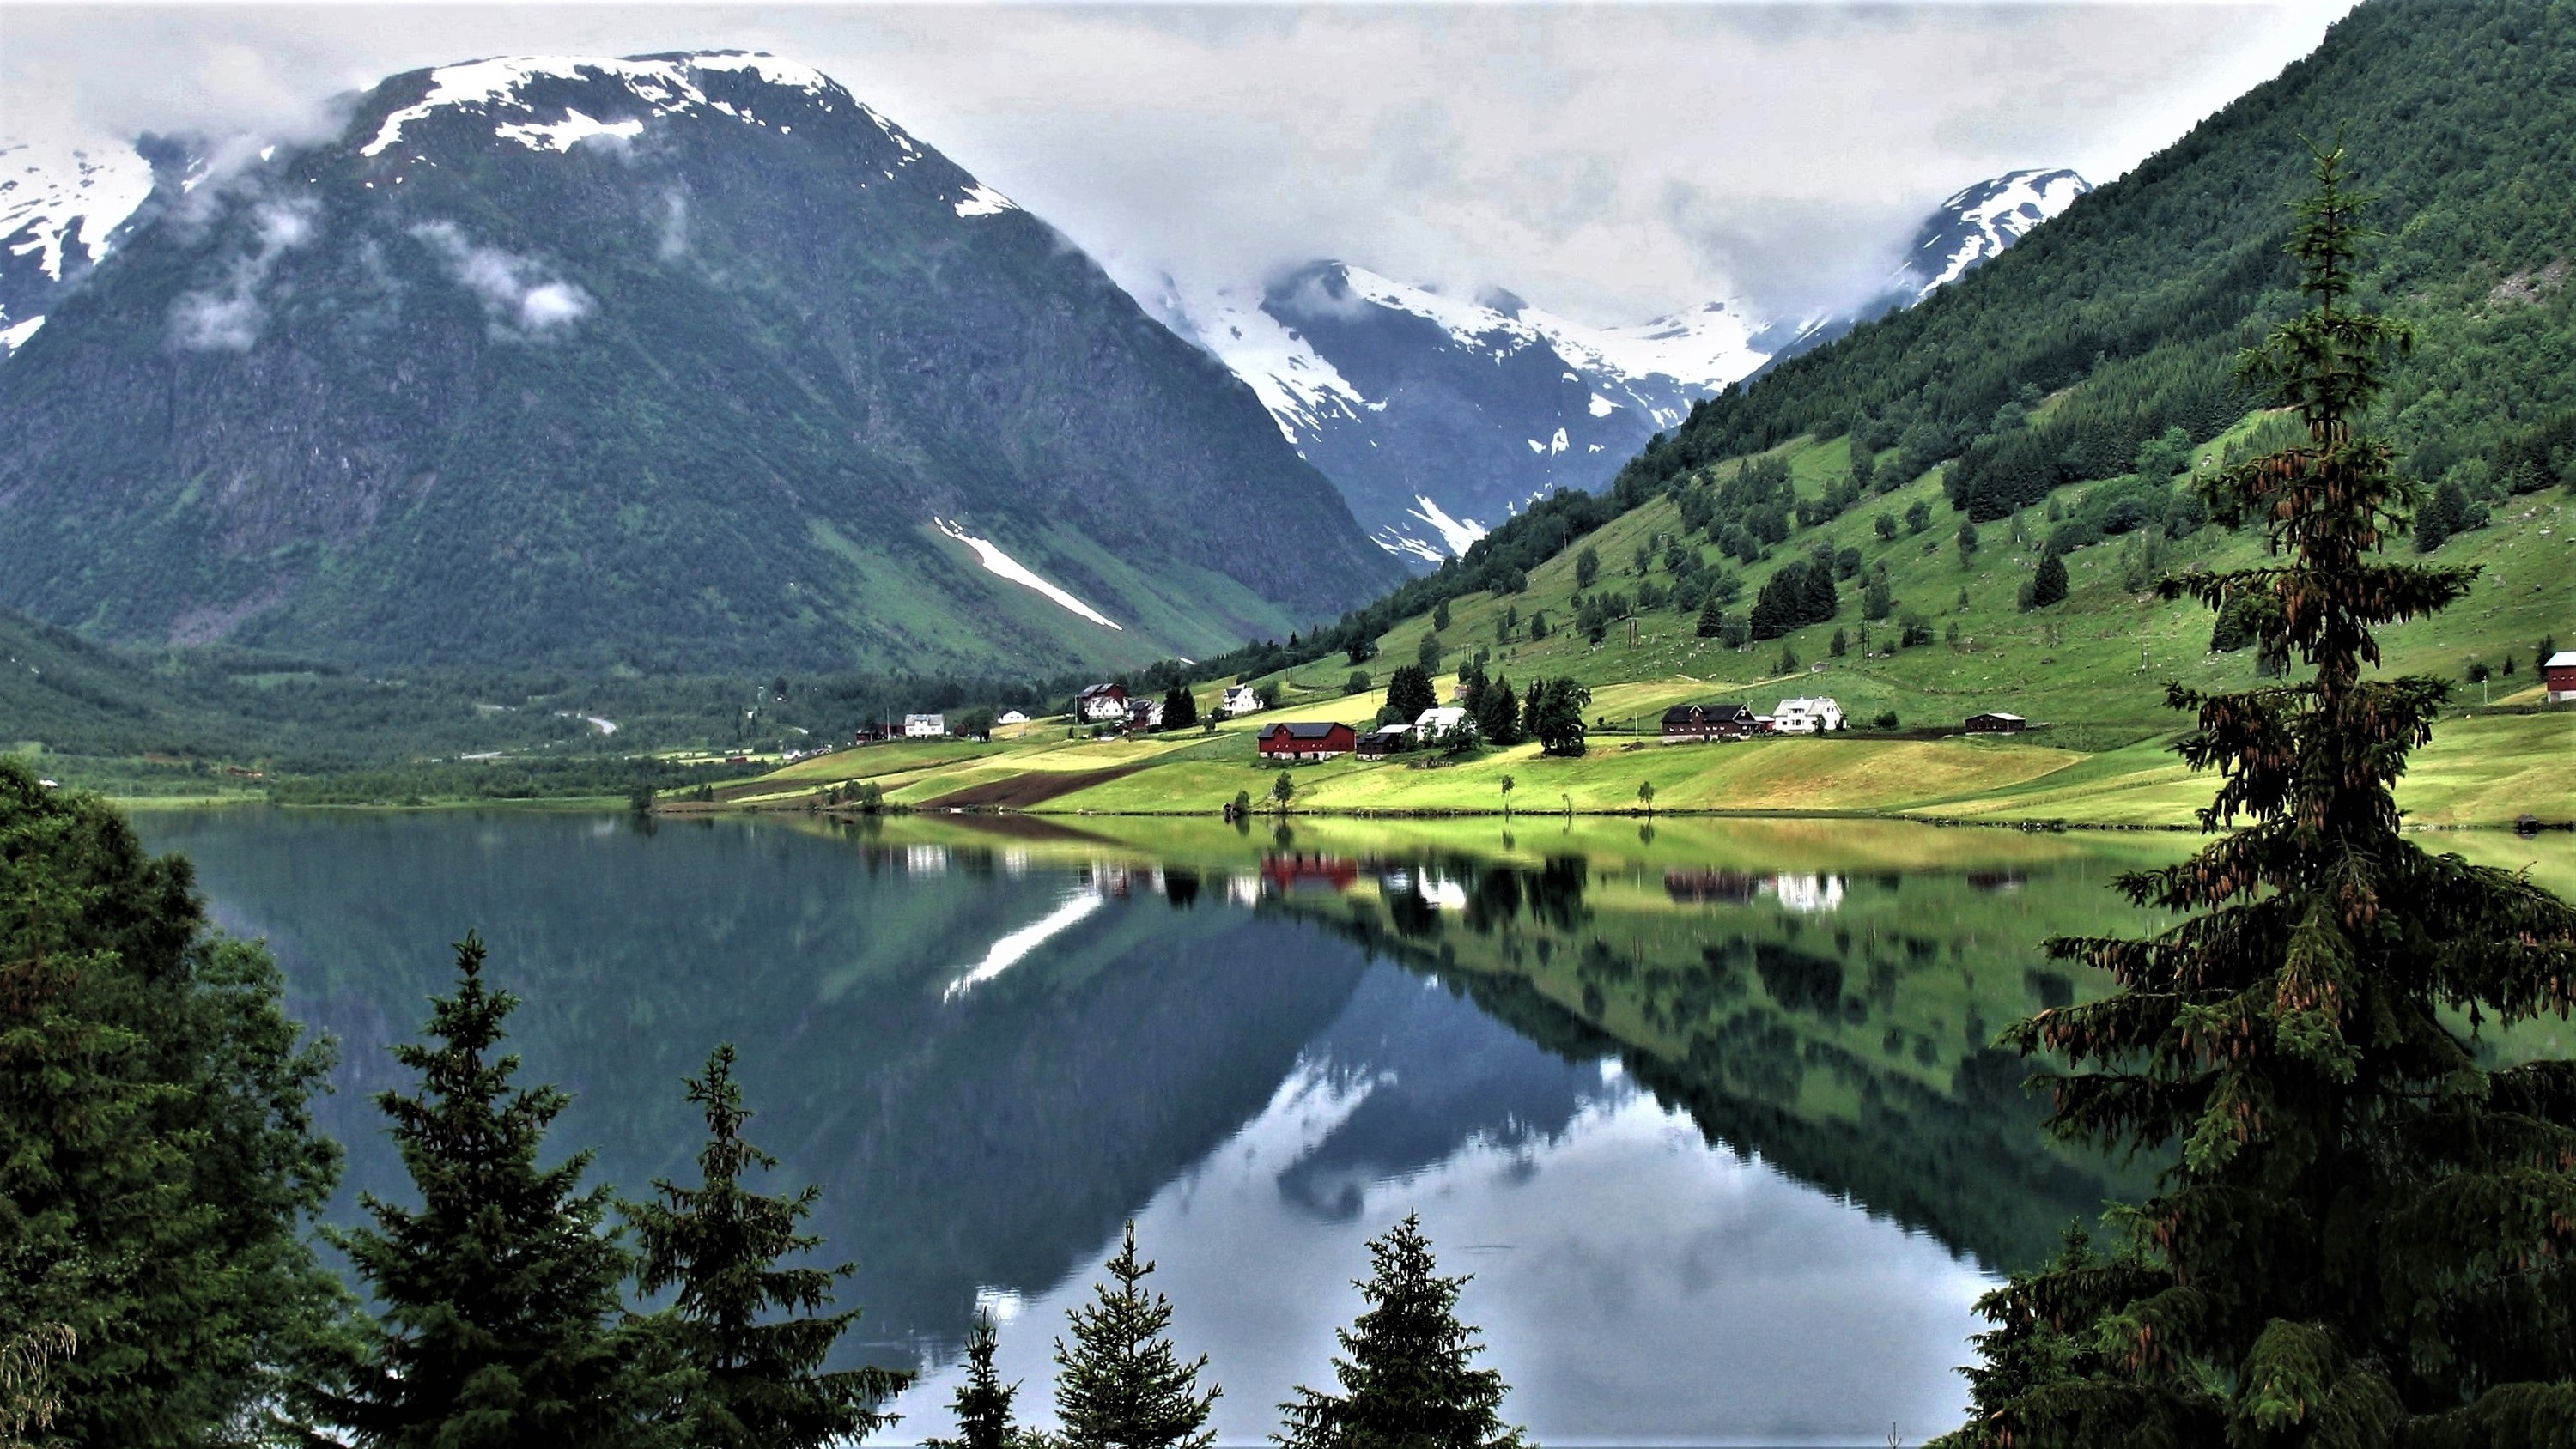 Norwegen von seiner schönsten Seite